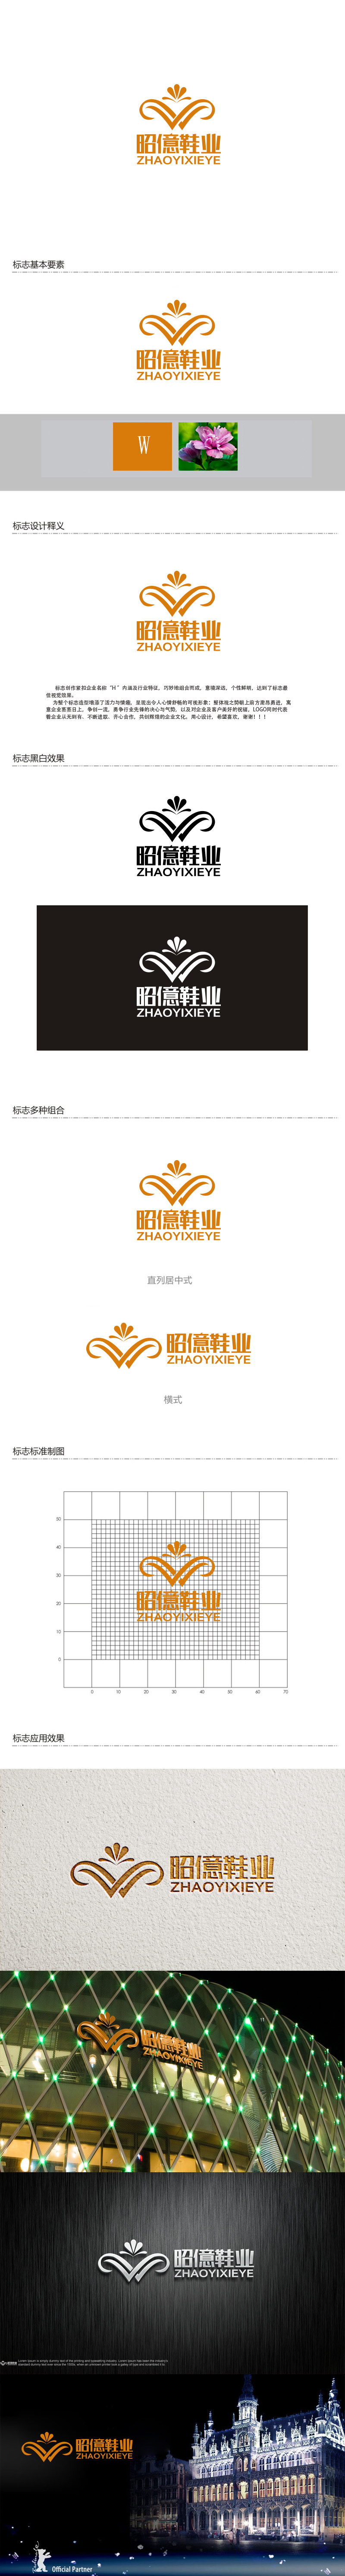 秦晓东的昭億鞋业logo设计